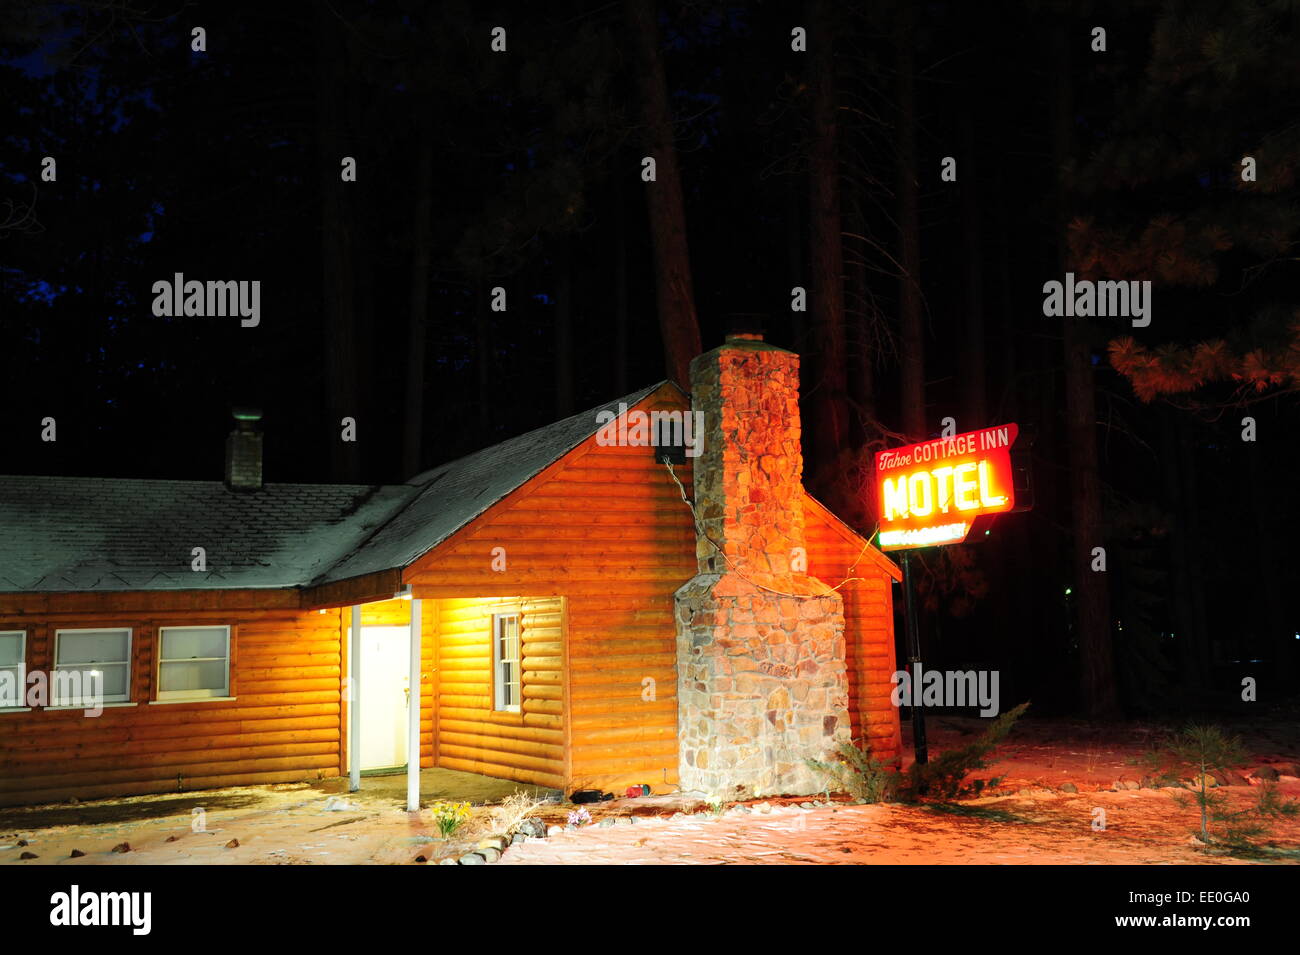 CA USA, South Lake Tahoe chalet d'hiver motel avec panneau à l'vacance Chalet Tahoe Inn Banque D'Images